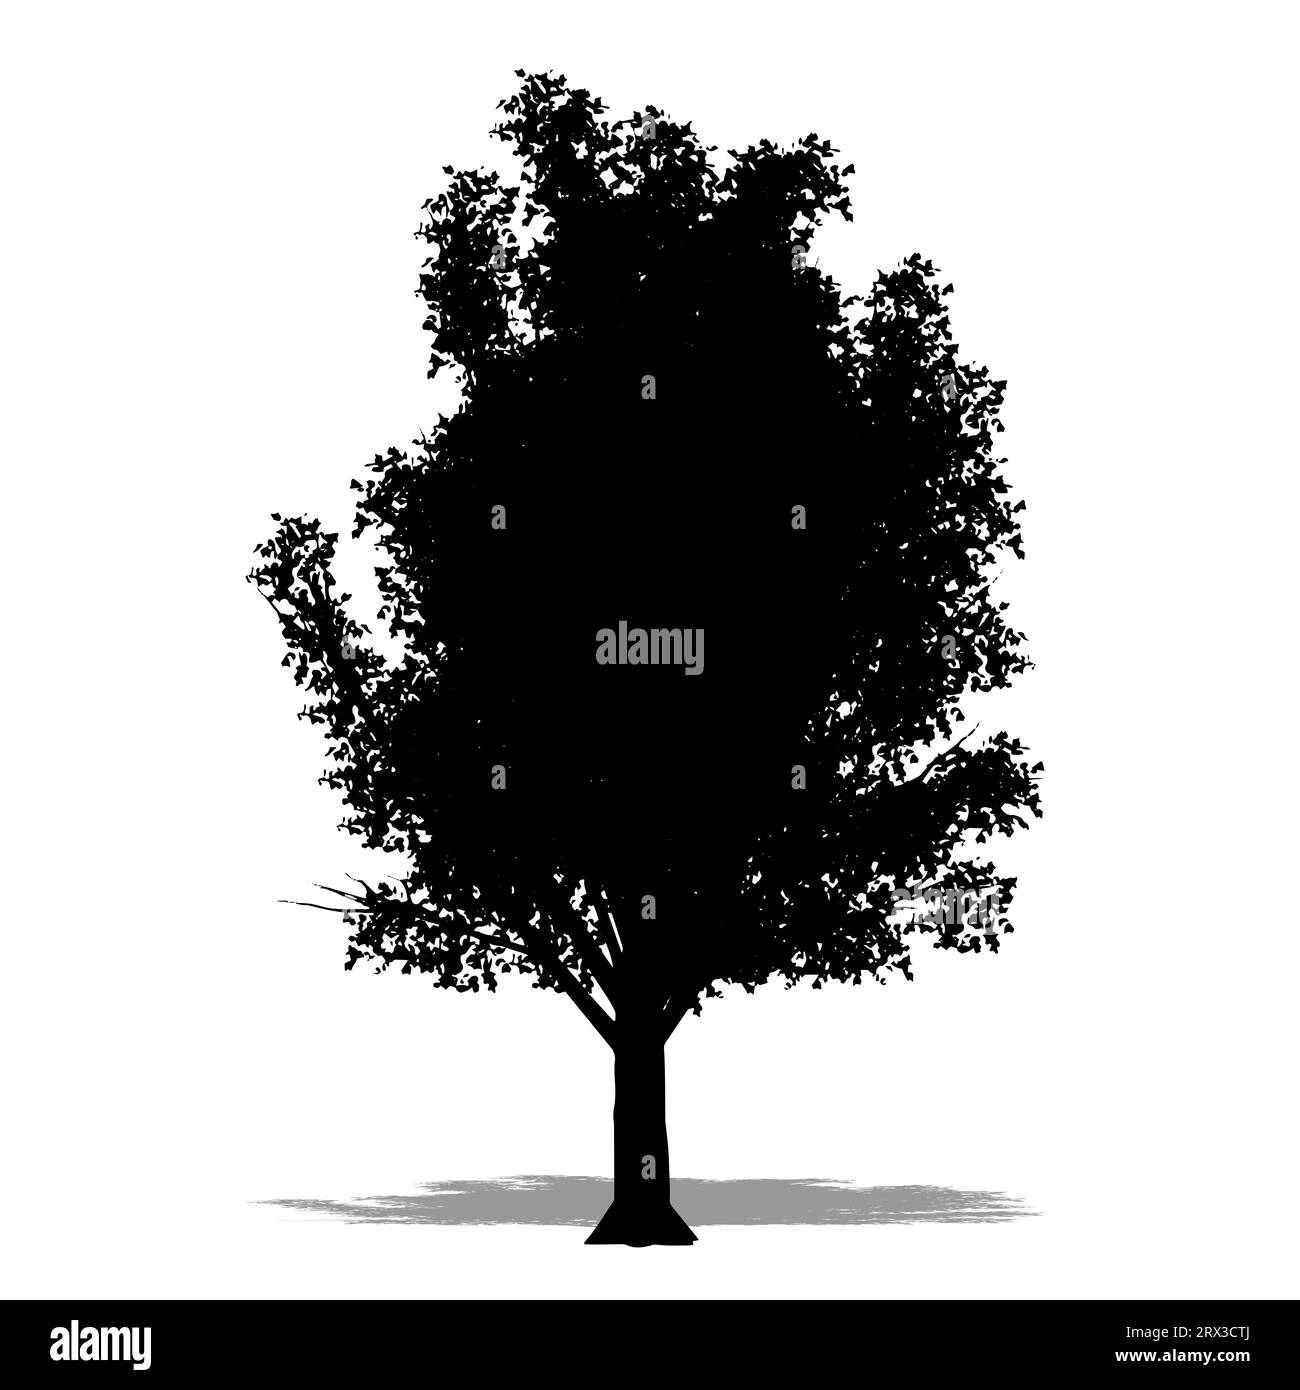 Set oder Sammlung von Crab Apple Tree als schwarze Silhouette auf weißem Hintergrund. Konzept oder konzeptionelle 3D-Illustration für Natur, Planet, Ökologie und Stockfoto